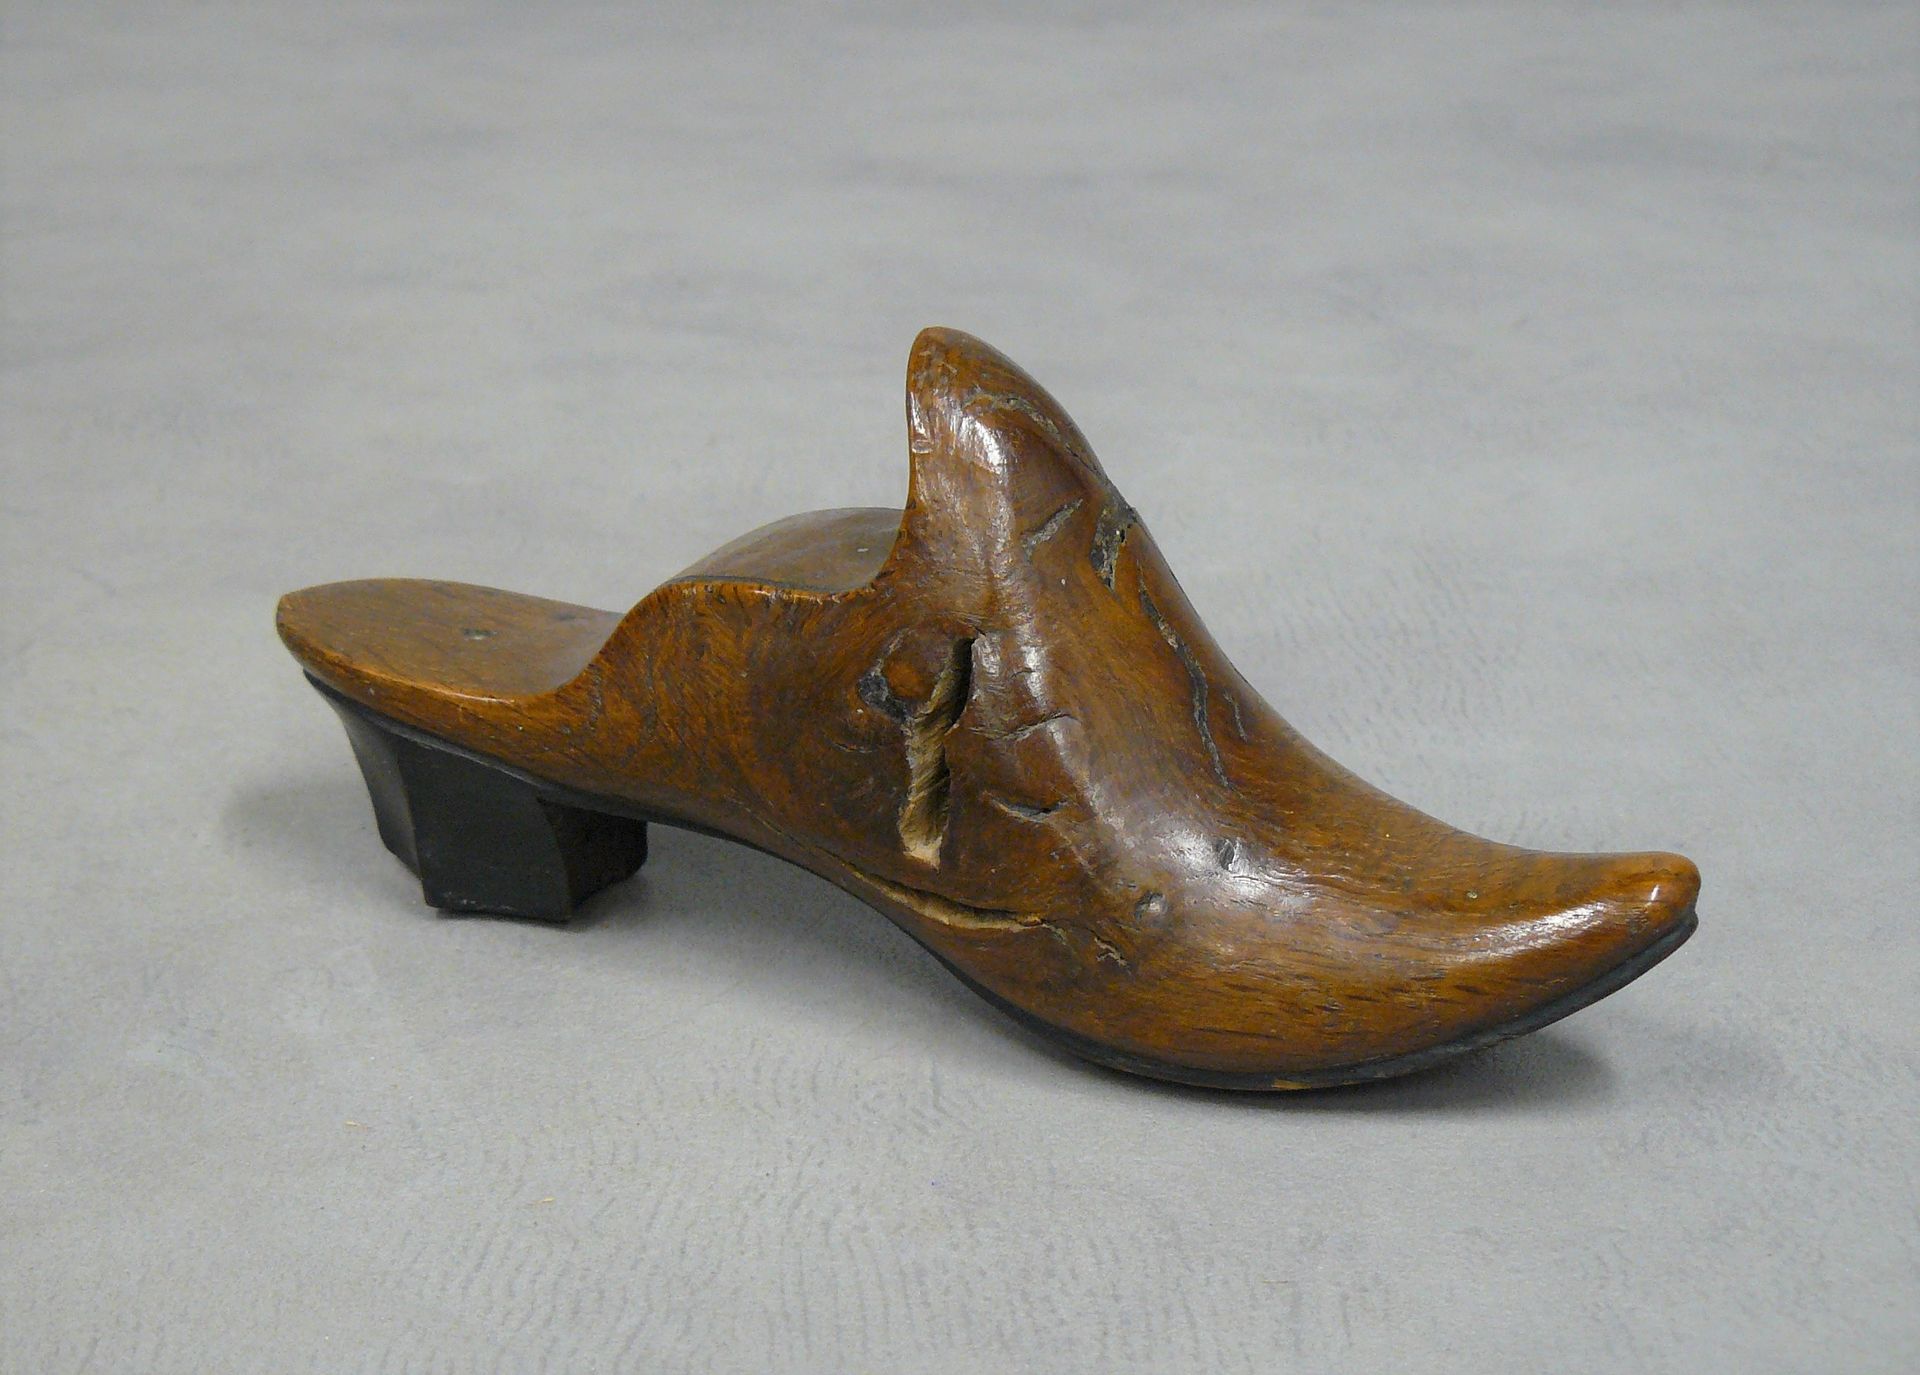 Null vecchia piccola forma per scarpe in legno intagliato - H 7,5 L 16,5 cm